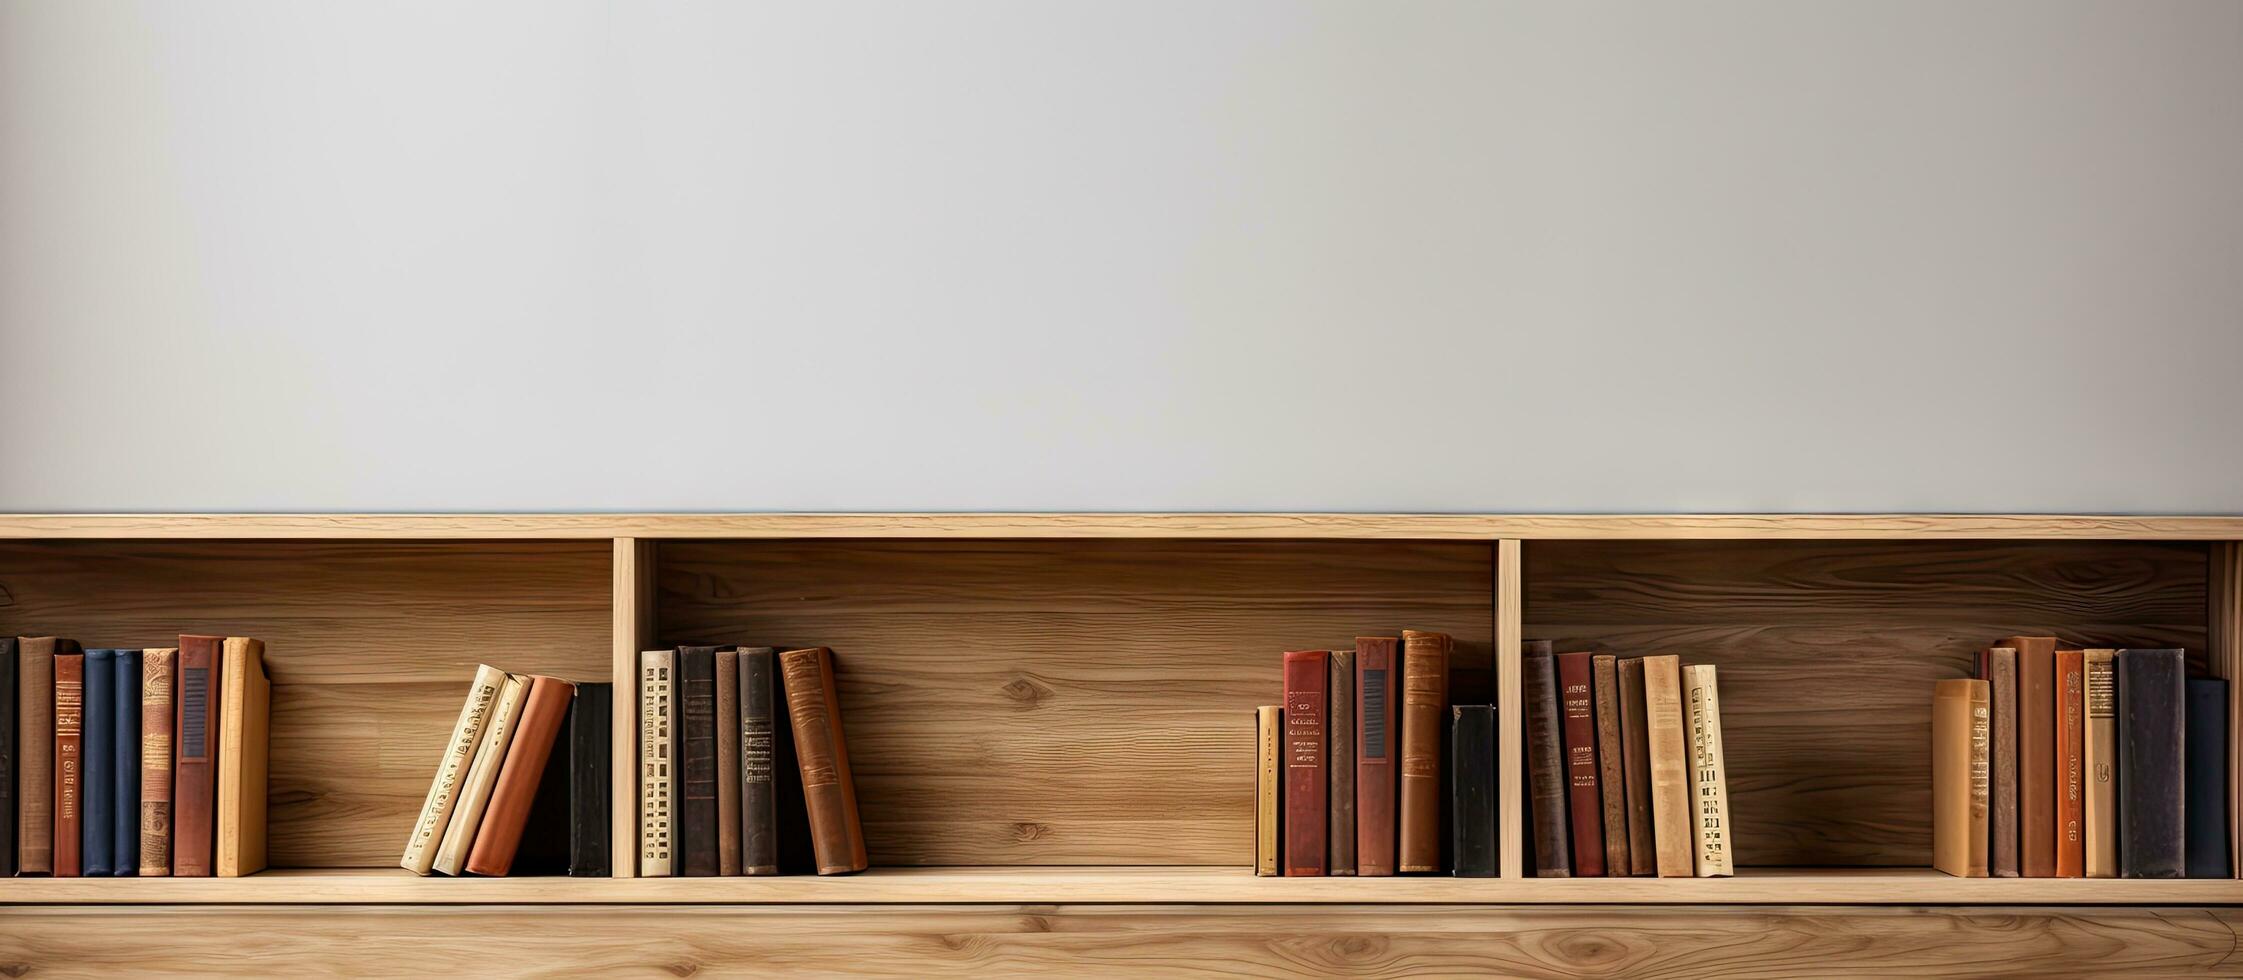 vide livres stockée sur en bois étagères photo